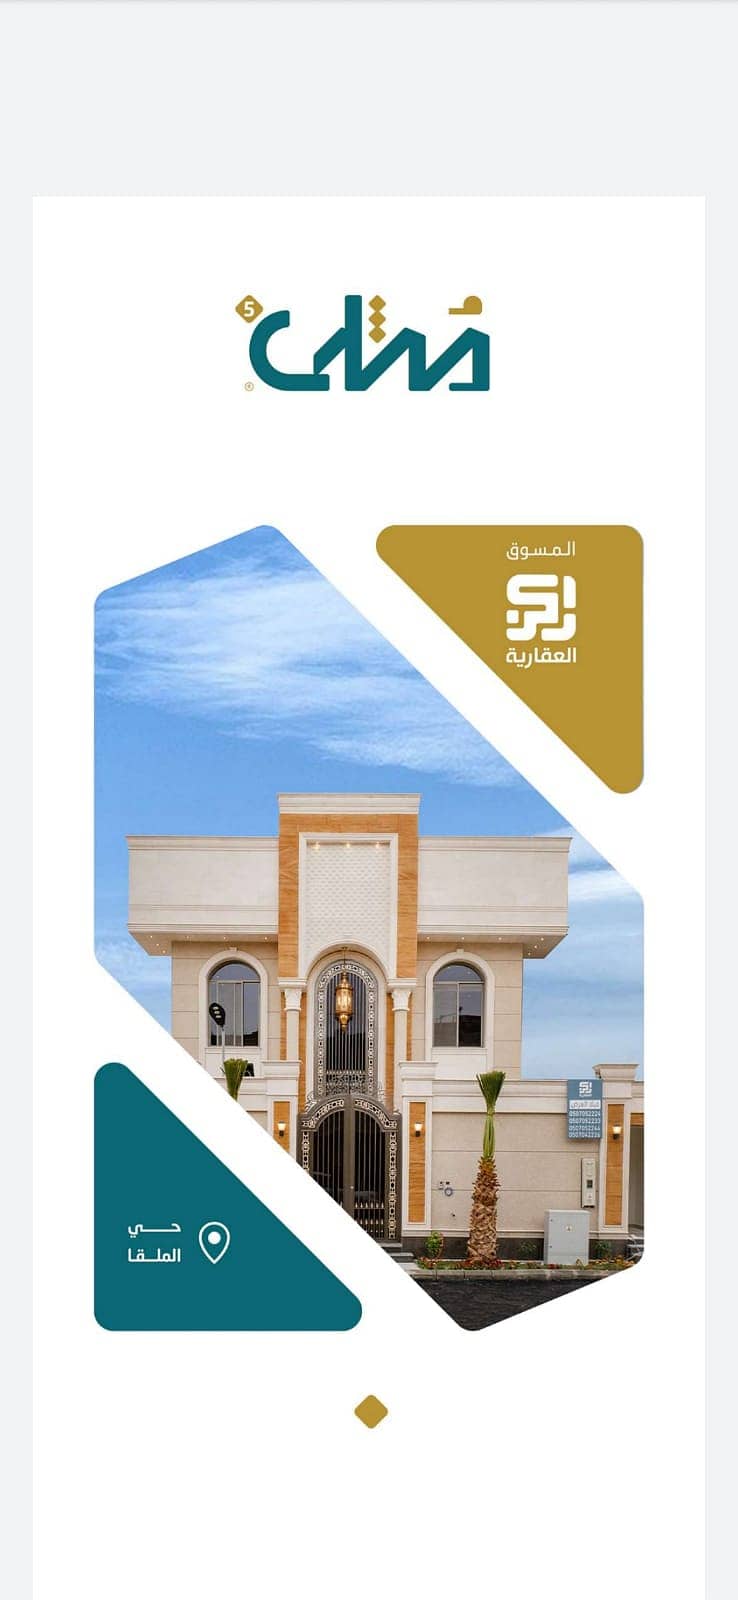 للبيع فلل مشروع مثلى 05، بحي الملقا شمال الرياض | 500م2